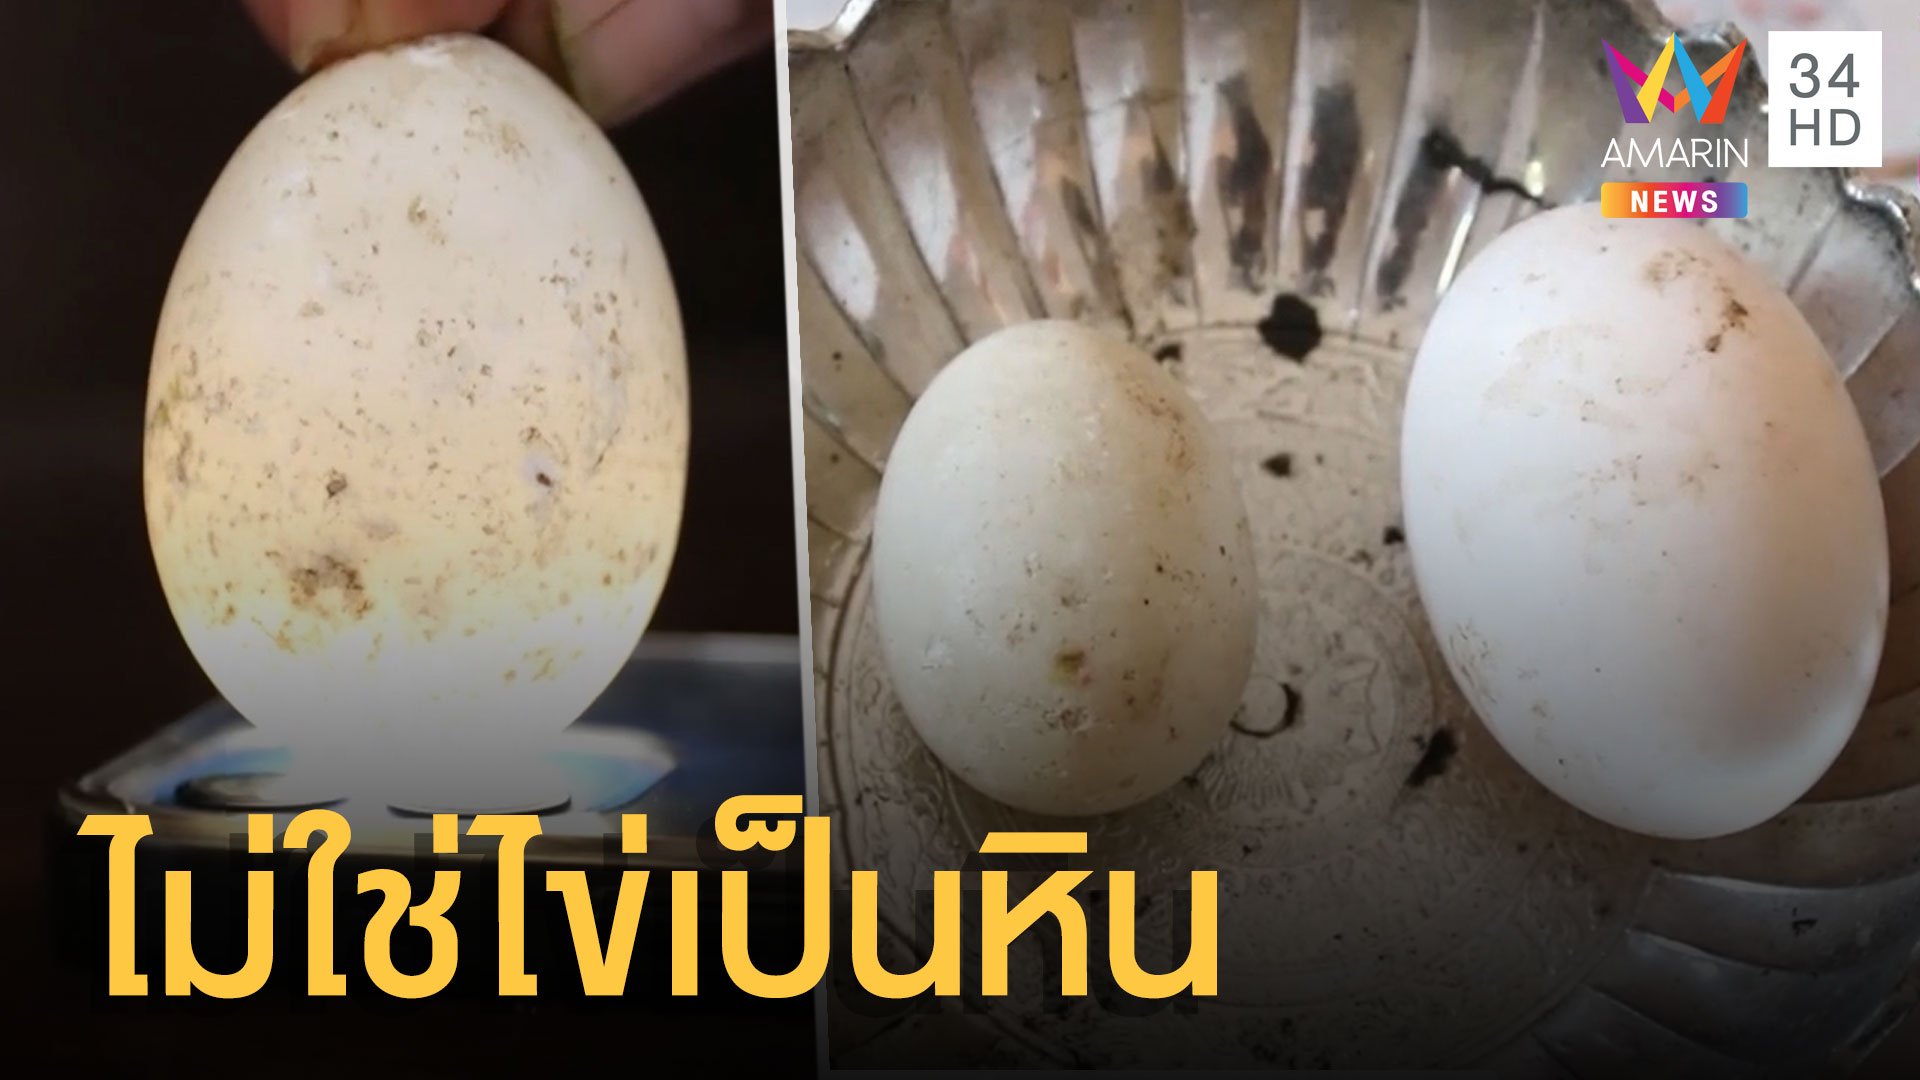 ไข่เป็ดโปร่งแสง เช็กแล้วไม่ใช่ไข่มันเป็นหินจริงๆ | ข่าวอรุณอมรินทร์ | 16 ธ.ค. 64 | AMARIN TVHD34